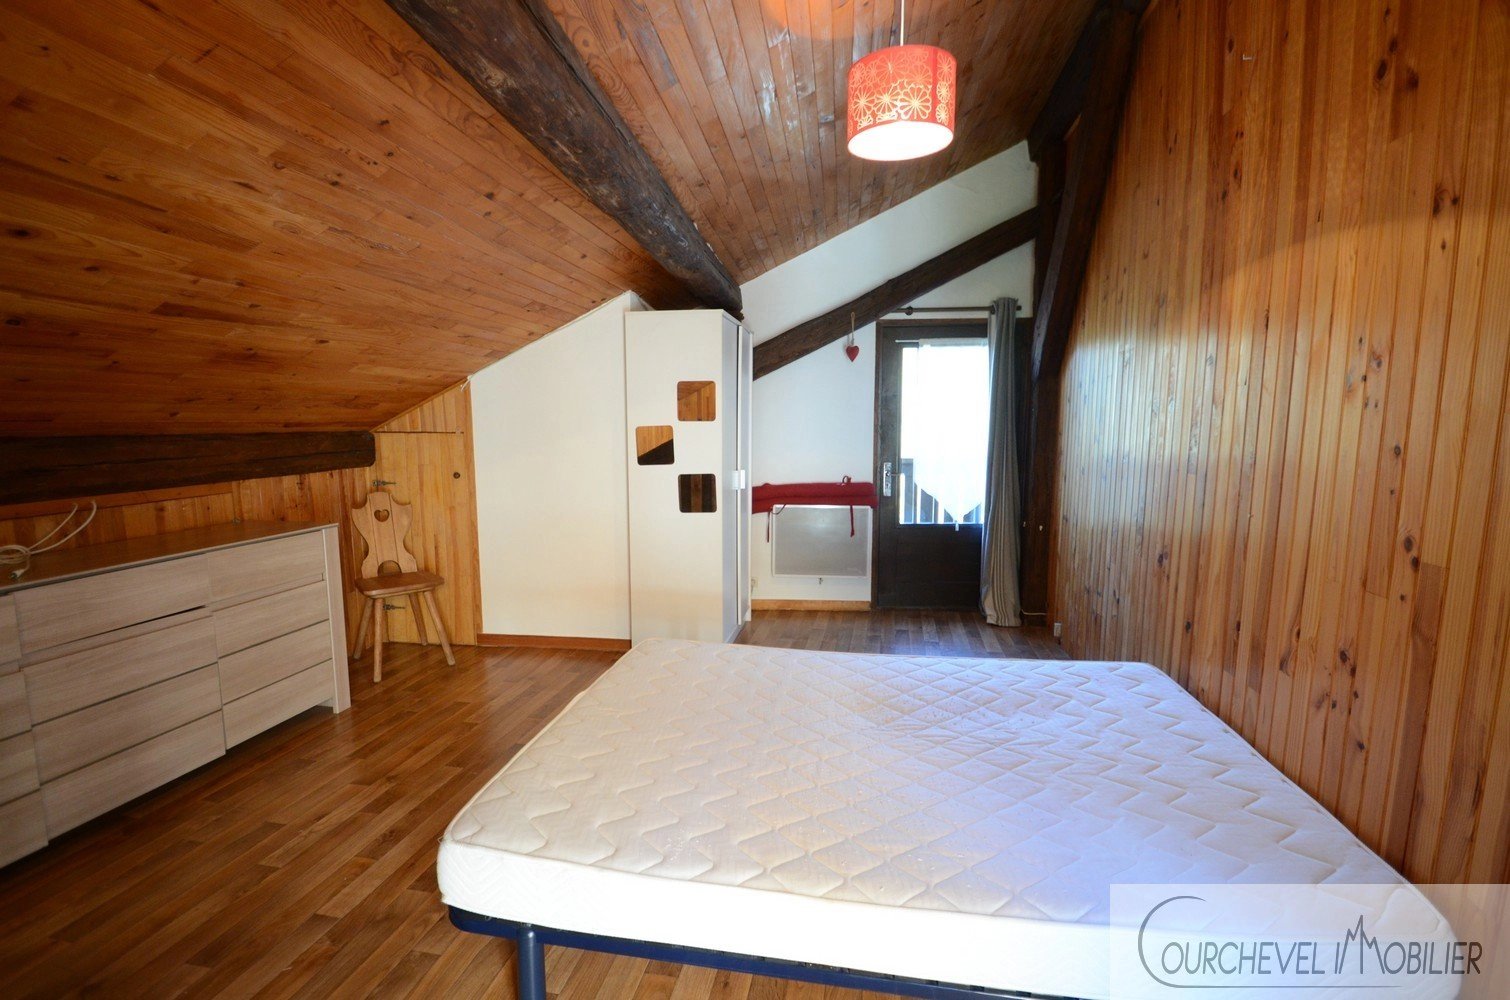 Bedroom Wooden floor